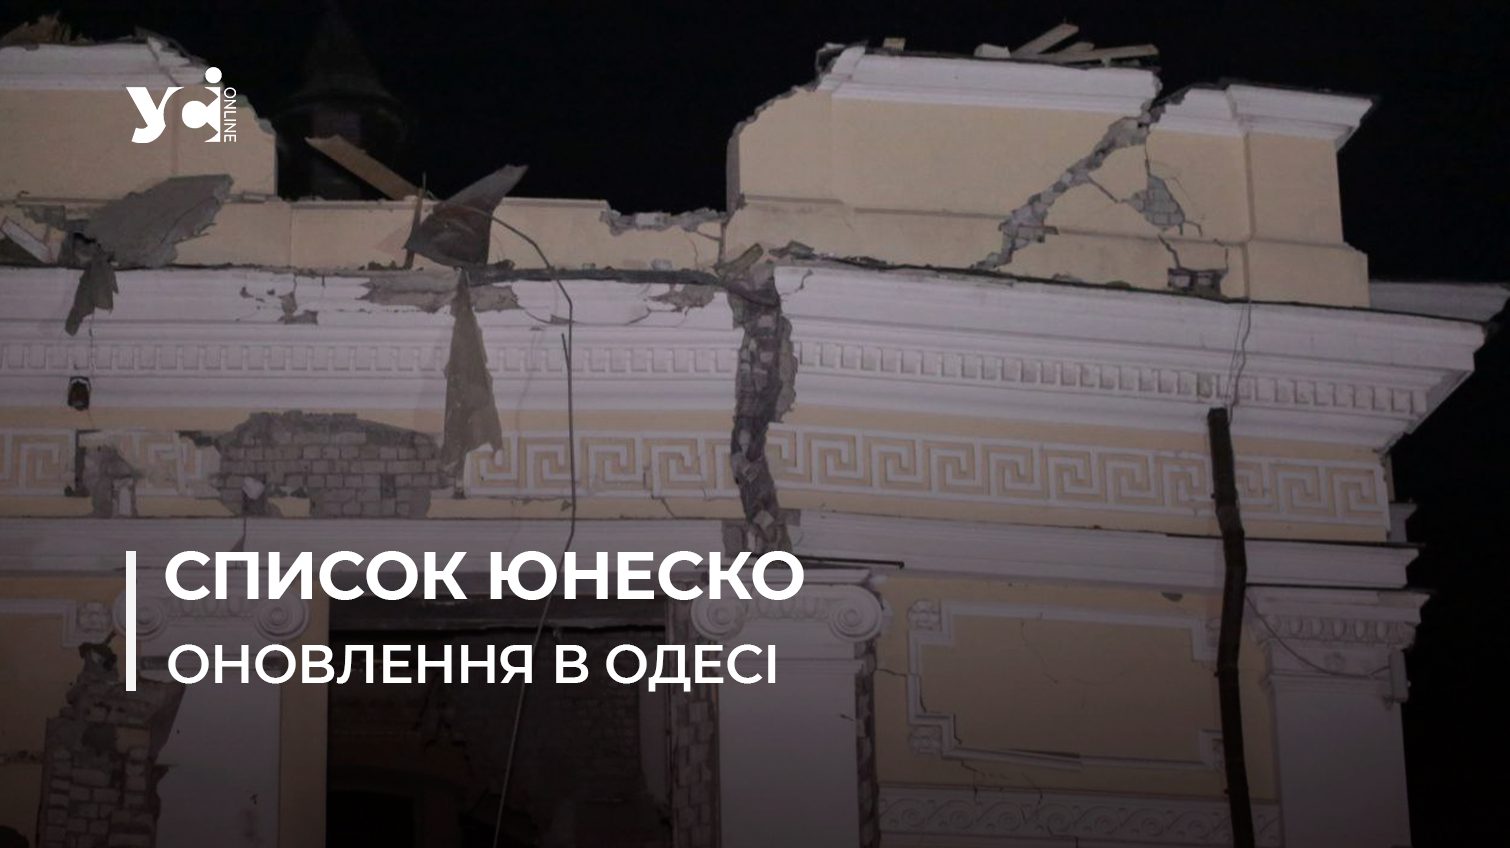 ЮНЕСКО оновило список пошкоджених пам’яток в Одесі: у переліку 8 об’єктів «фото»